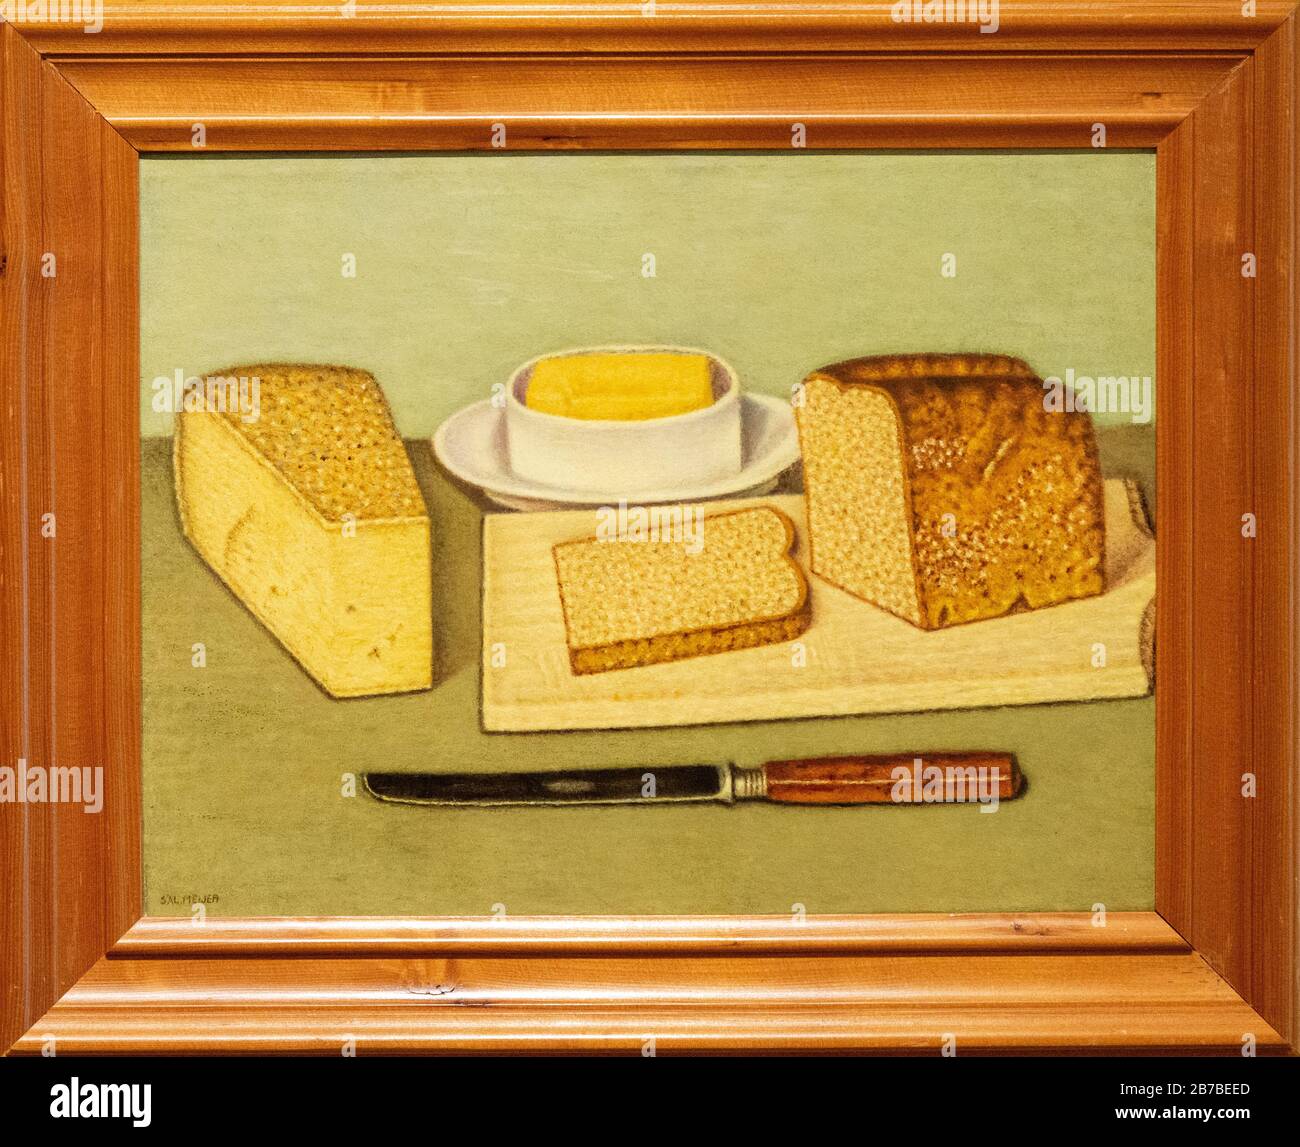 Stilleven met brood, kaas en boter door Sal Meijer Foto Stock